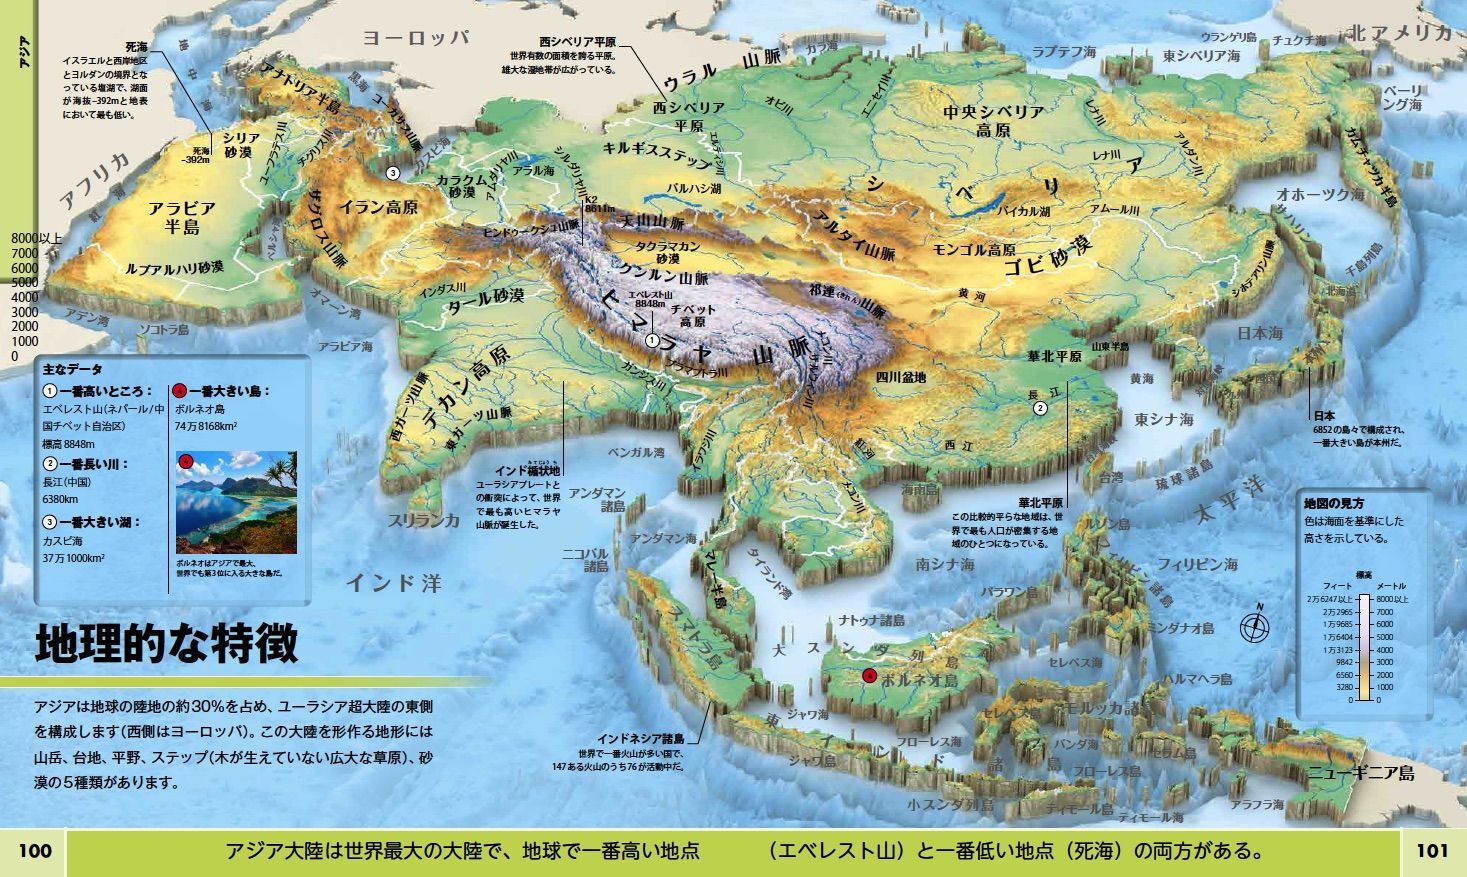 ビジュアル書籍 地球maps 世界6大陸 発見の旅 ６月18日 月 発売 日経ナショナル ジオグラフィック社のプレスリリース